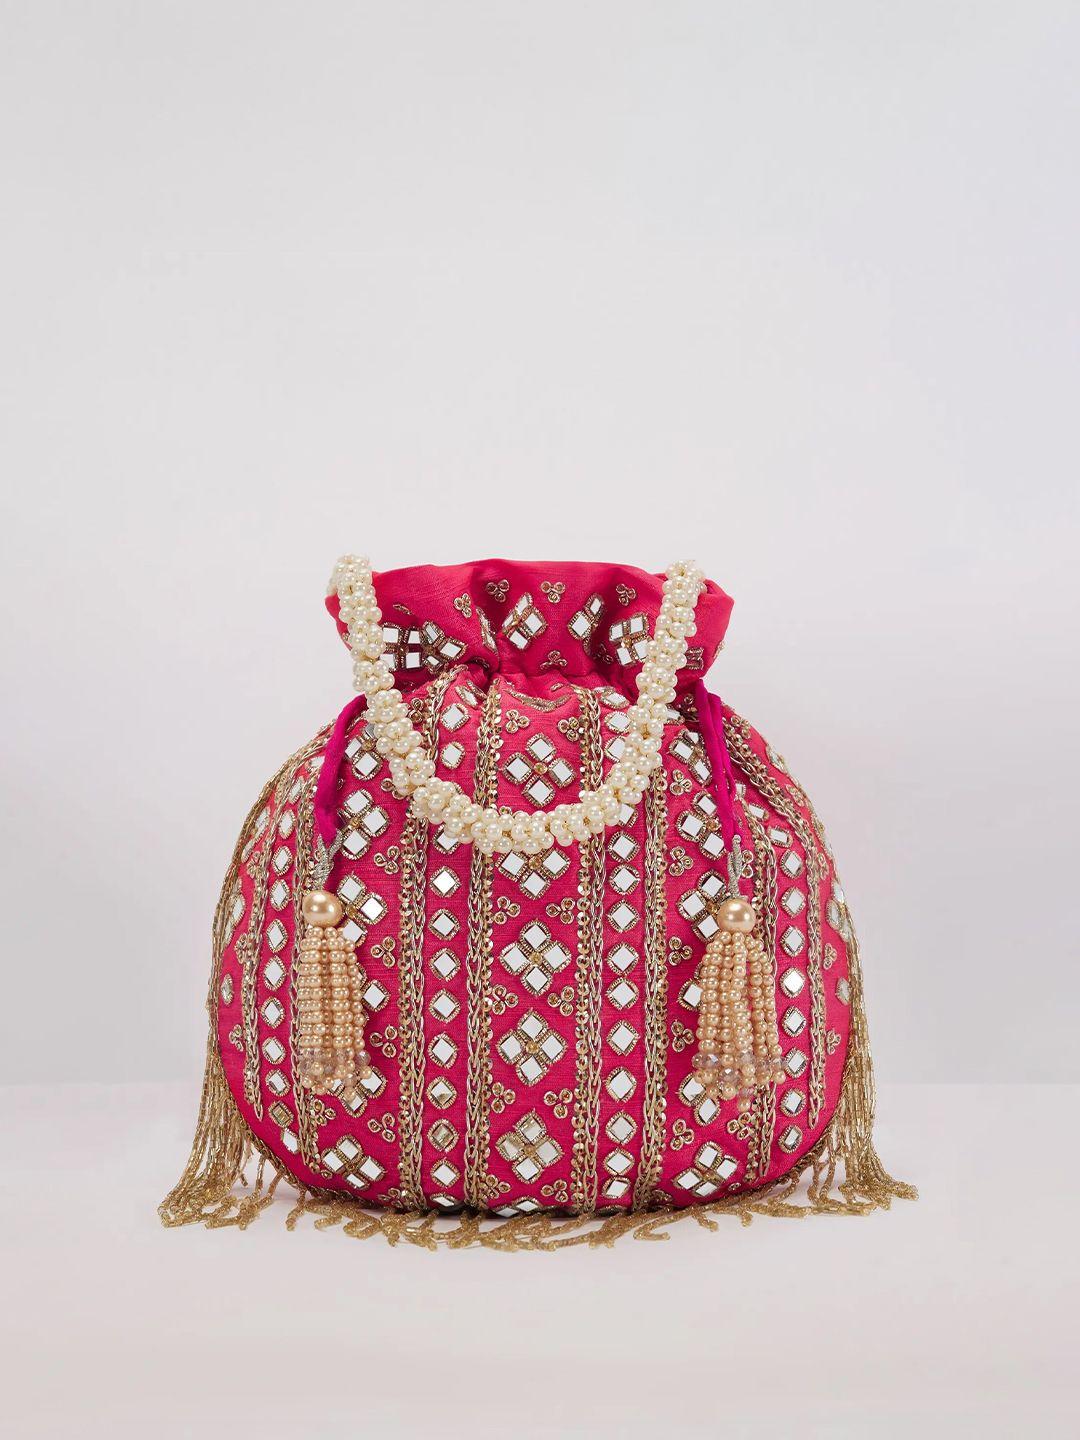 kalki fashion pink & white embroidered potli clutch